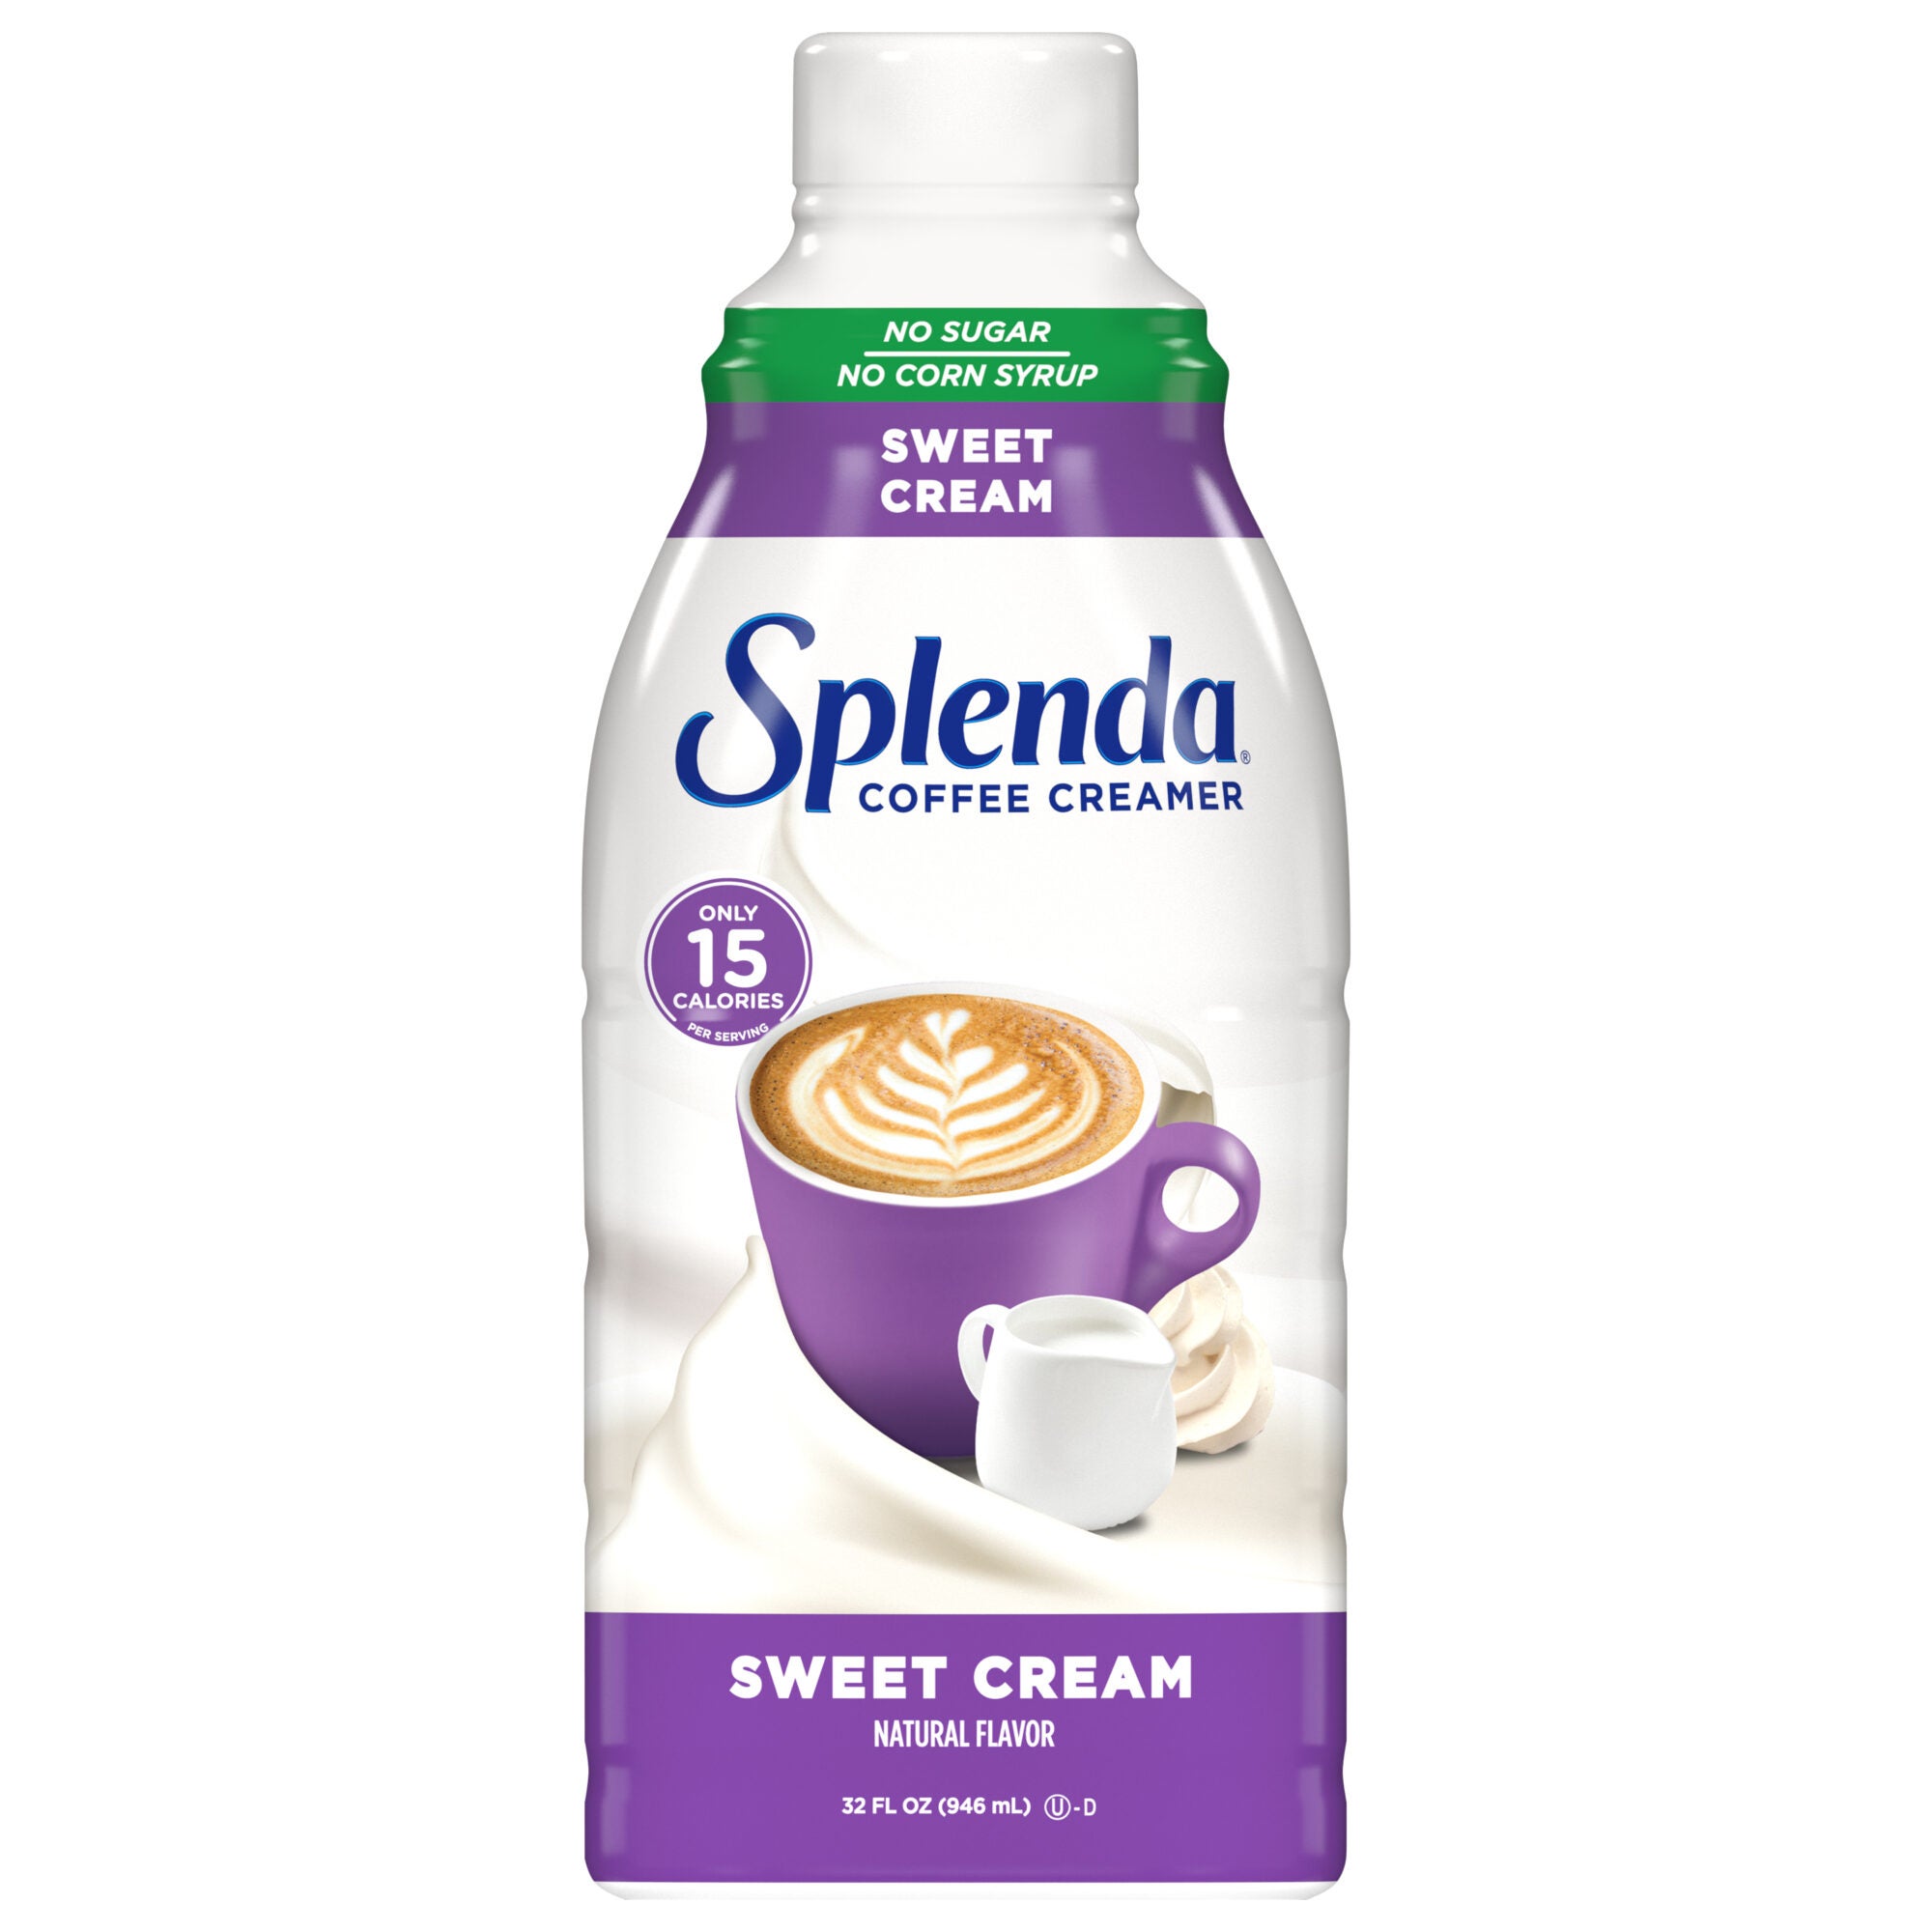 Splenda Coffee Creamer - Sweet Cream, 32oz. Bottle - Front